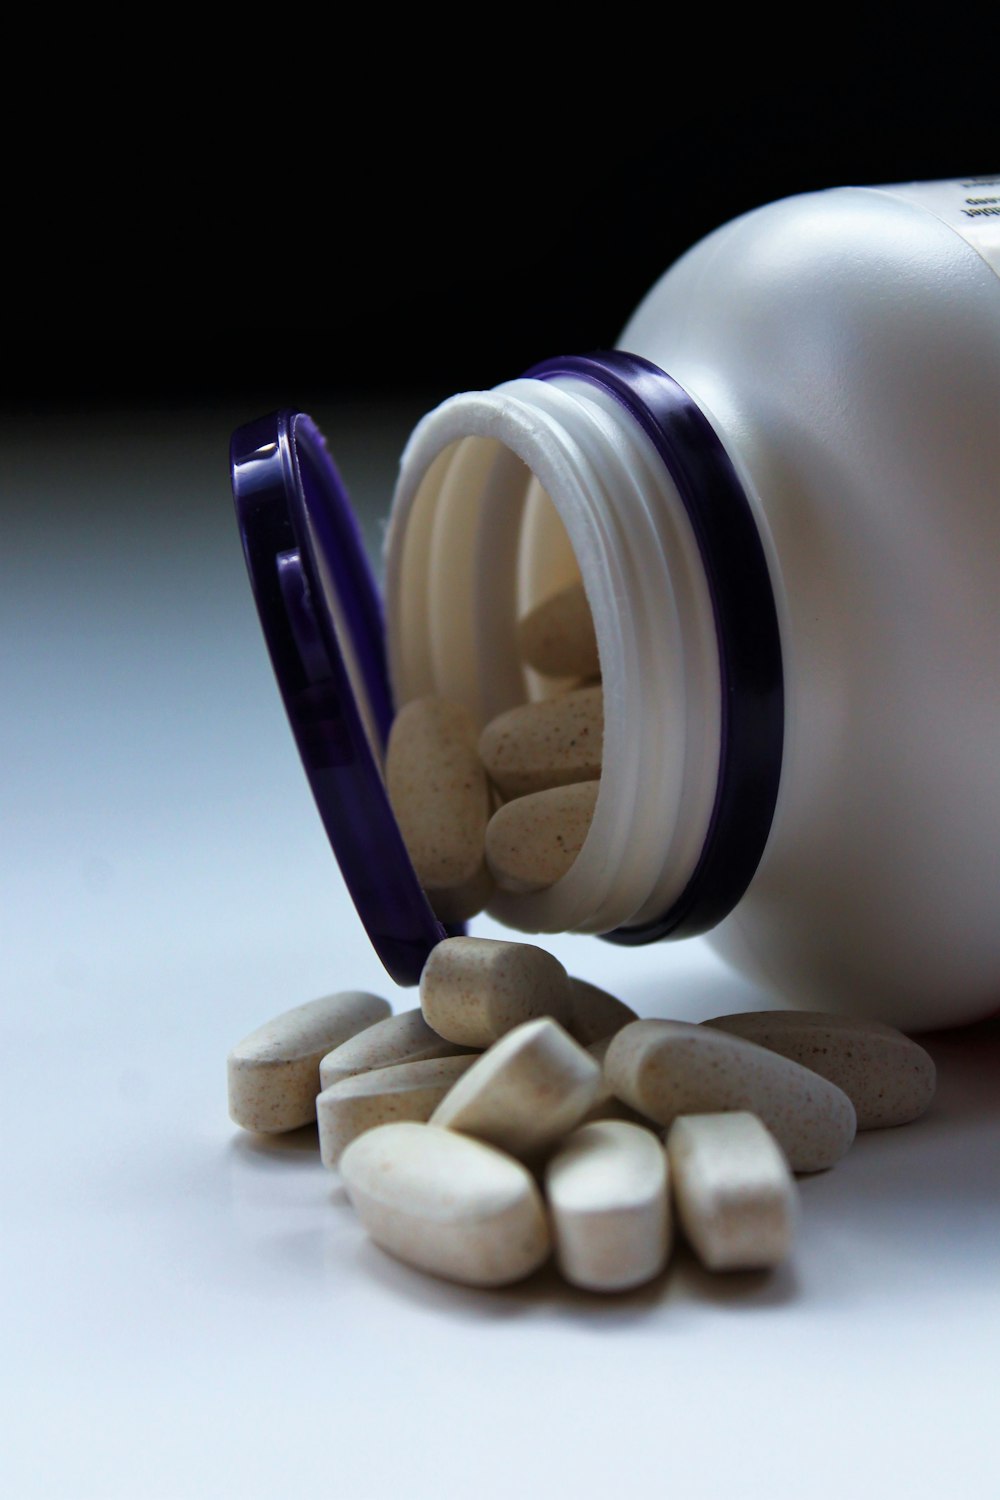 píldoras de medicación ovaladas blancas